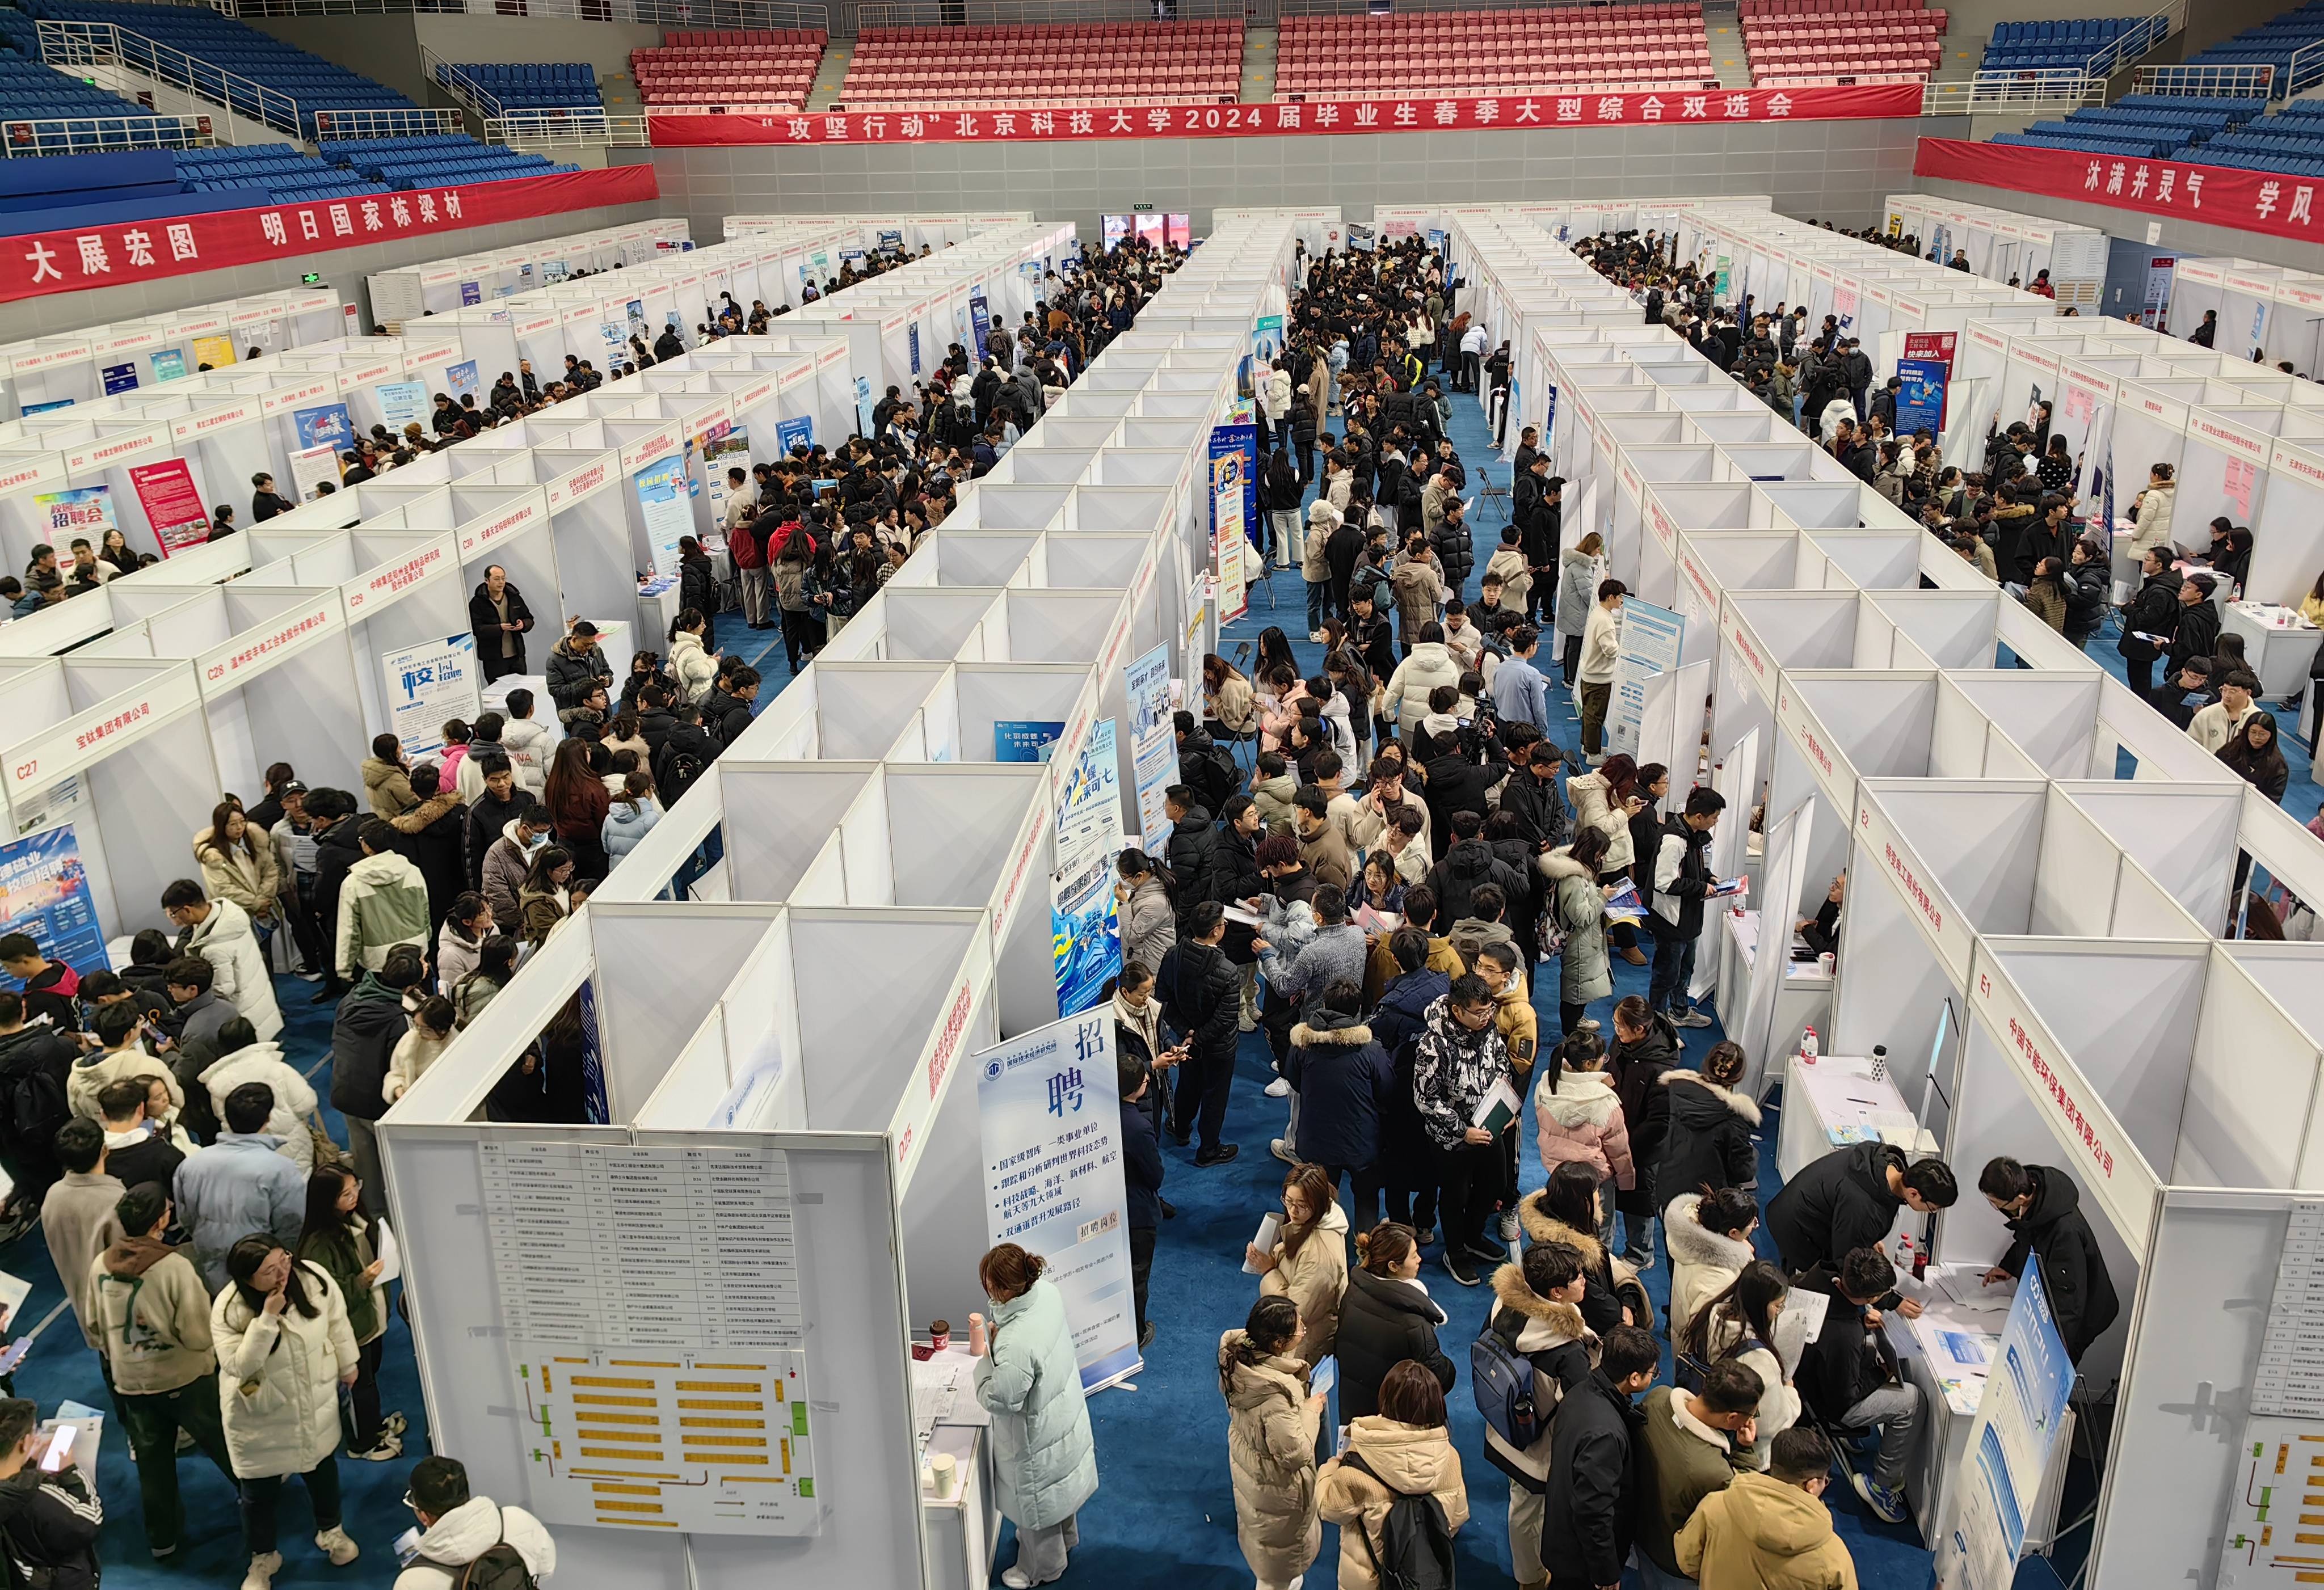 北京科技大学举办春季大型综合双选会,352家企业揽才